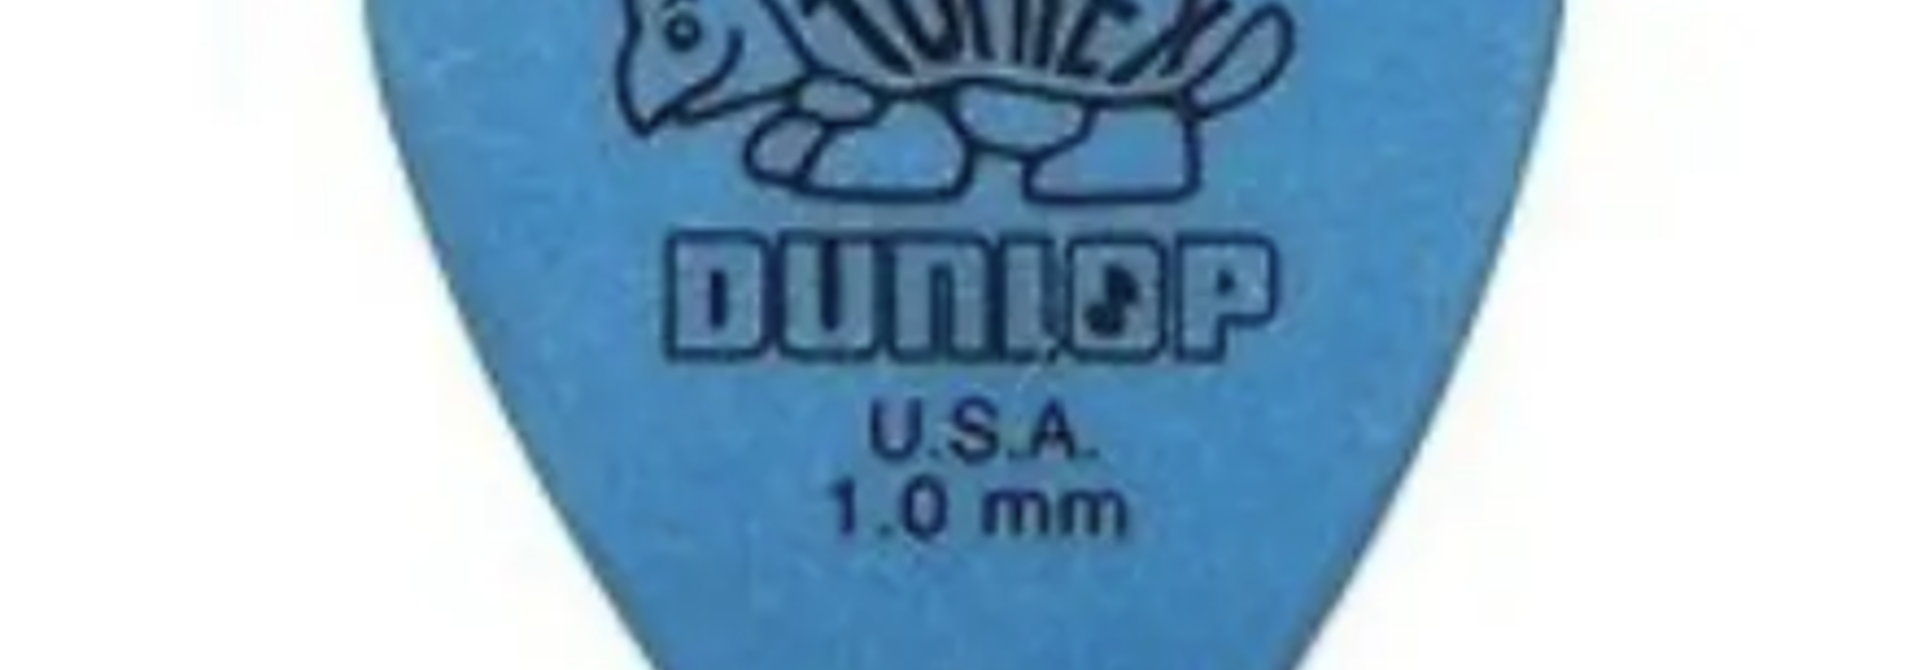 Dunlop Tortex 4181